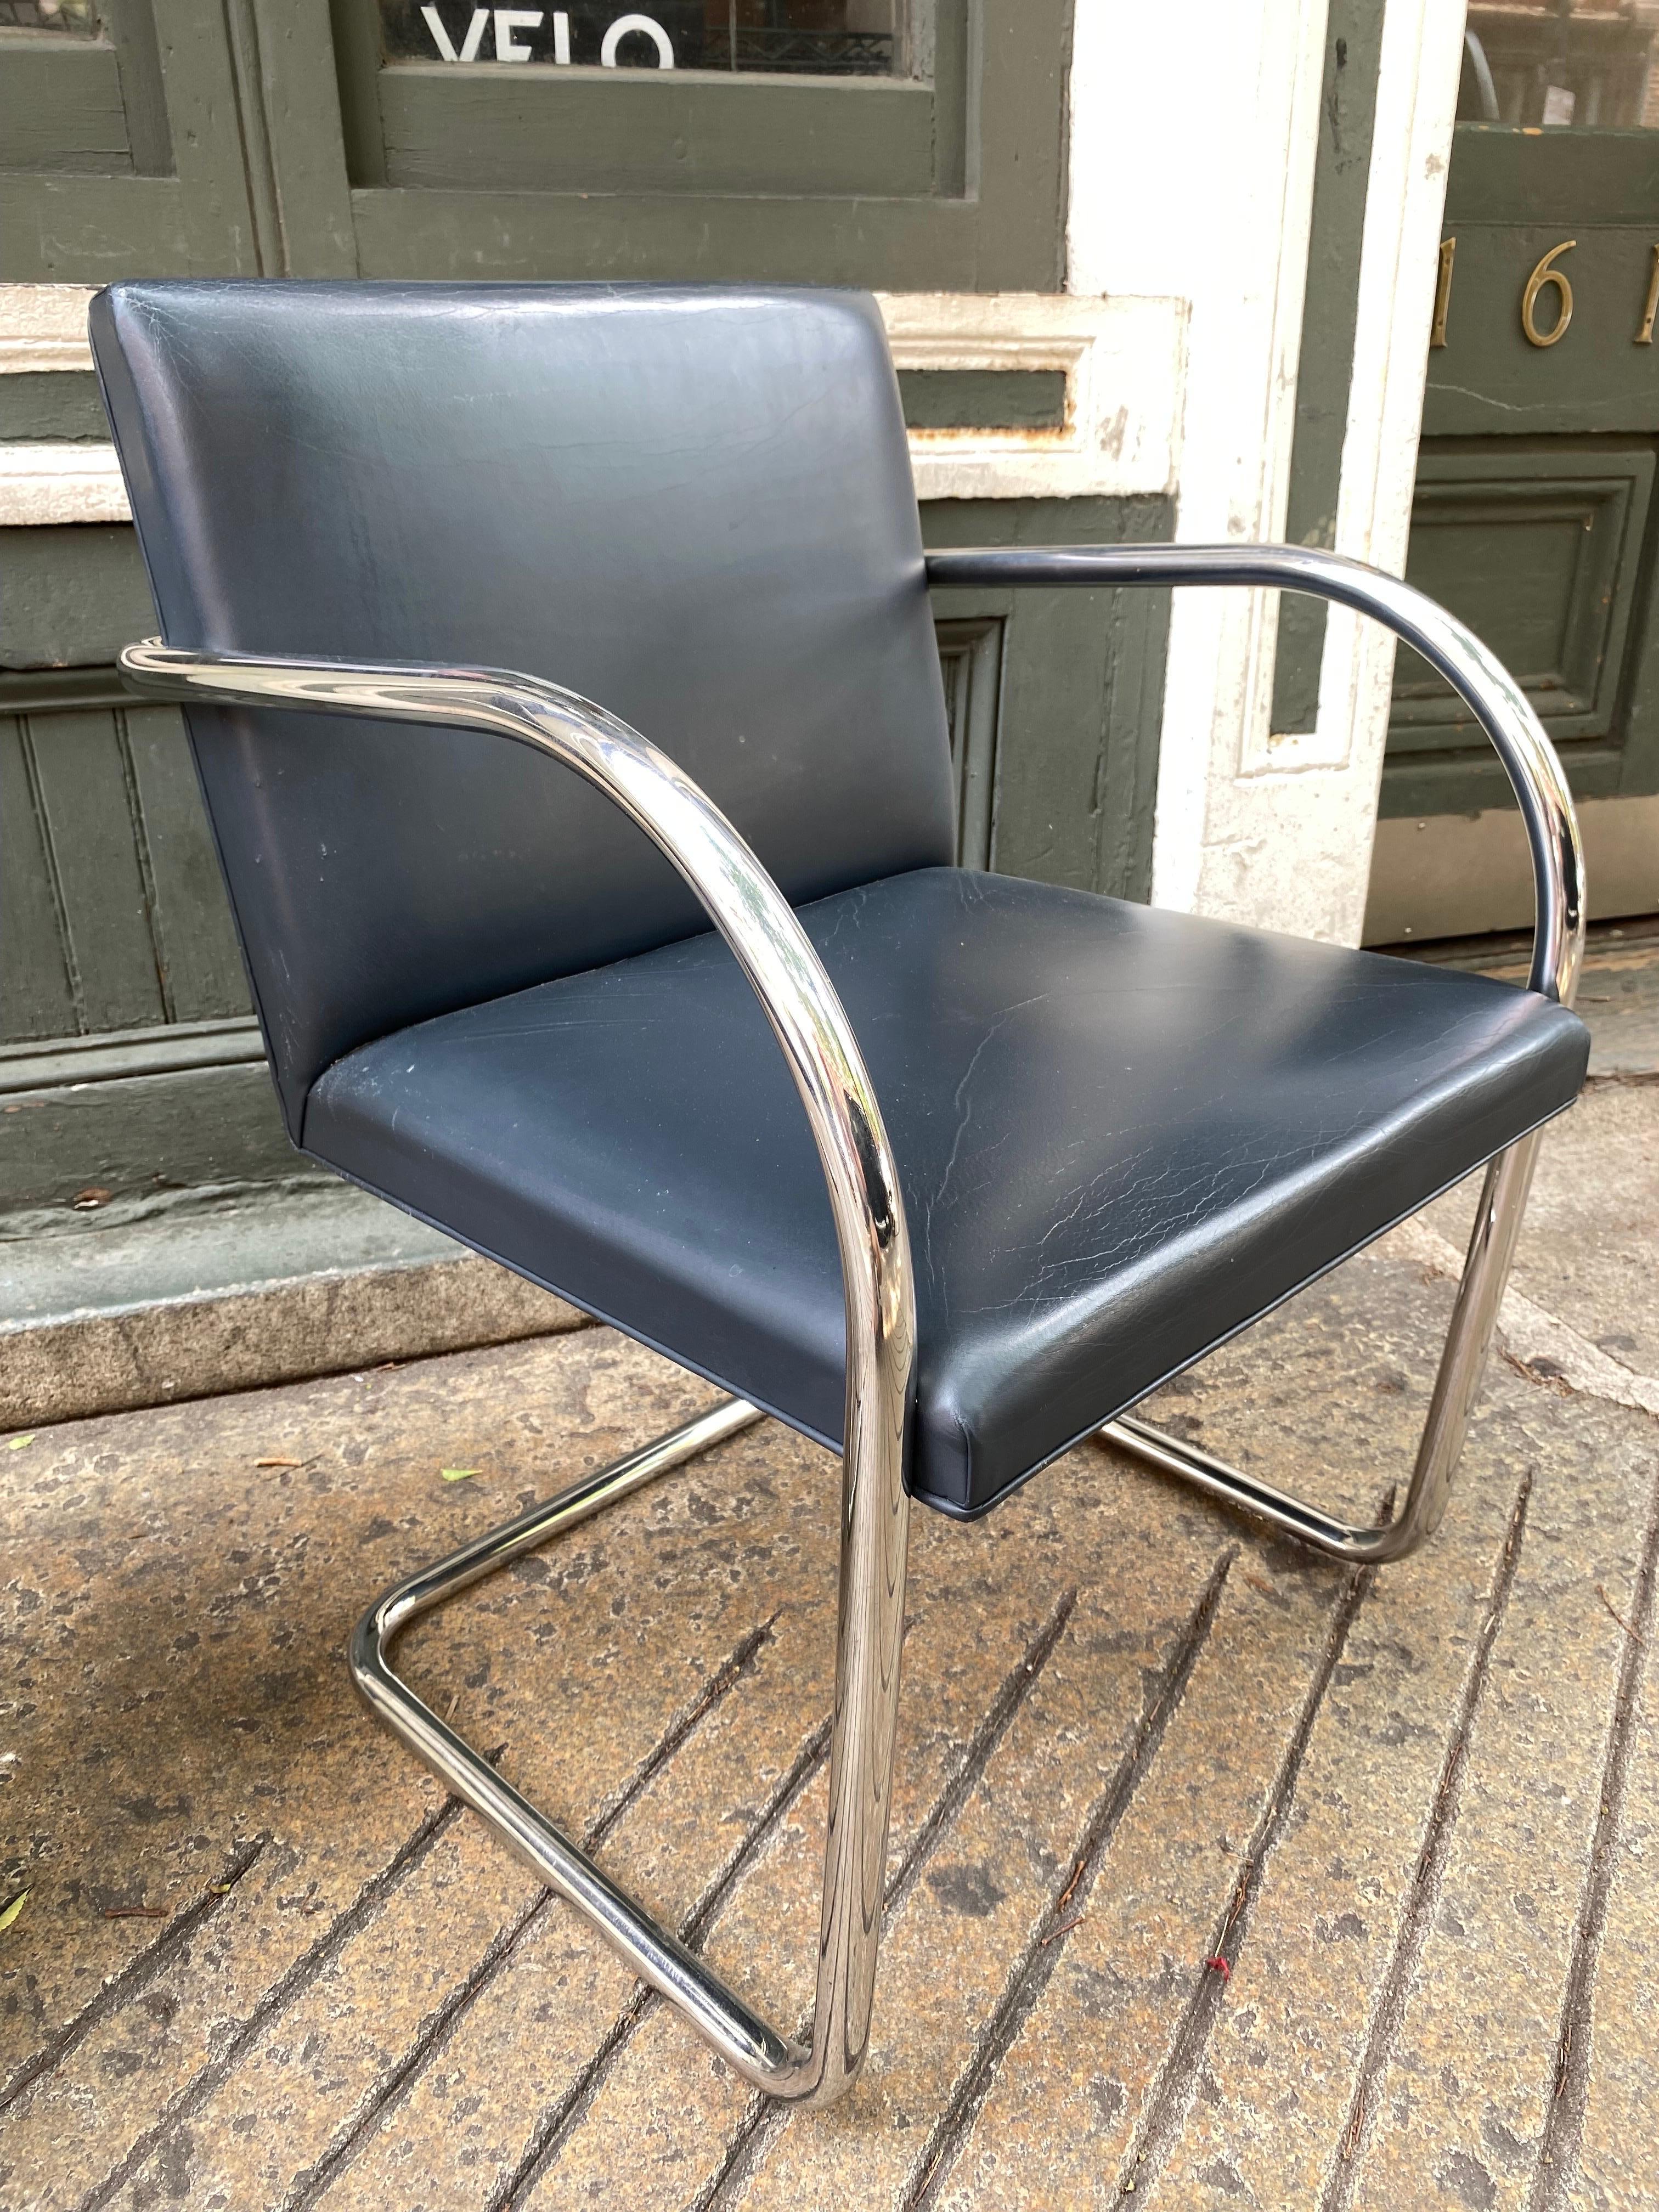 Mies van der Rohe Tubular Brno Chair, 2 disponibles, prix séparés. Le chrome est très propre, le cuir présente des traces d'usure. Les chaises datent des années 1980 et portent l'étiquette de Label. A utiliser tel quel ou à refaire dans le matériau